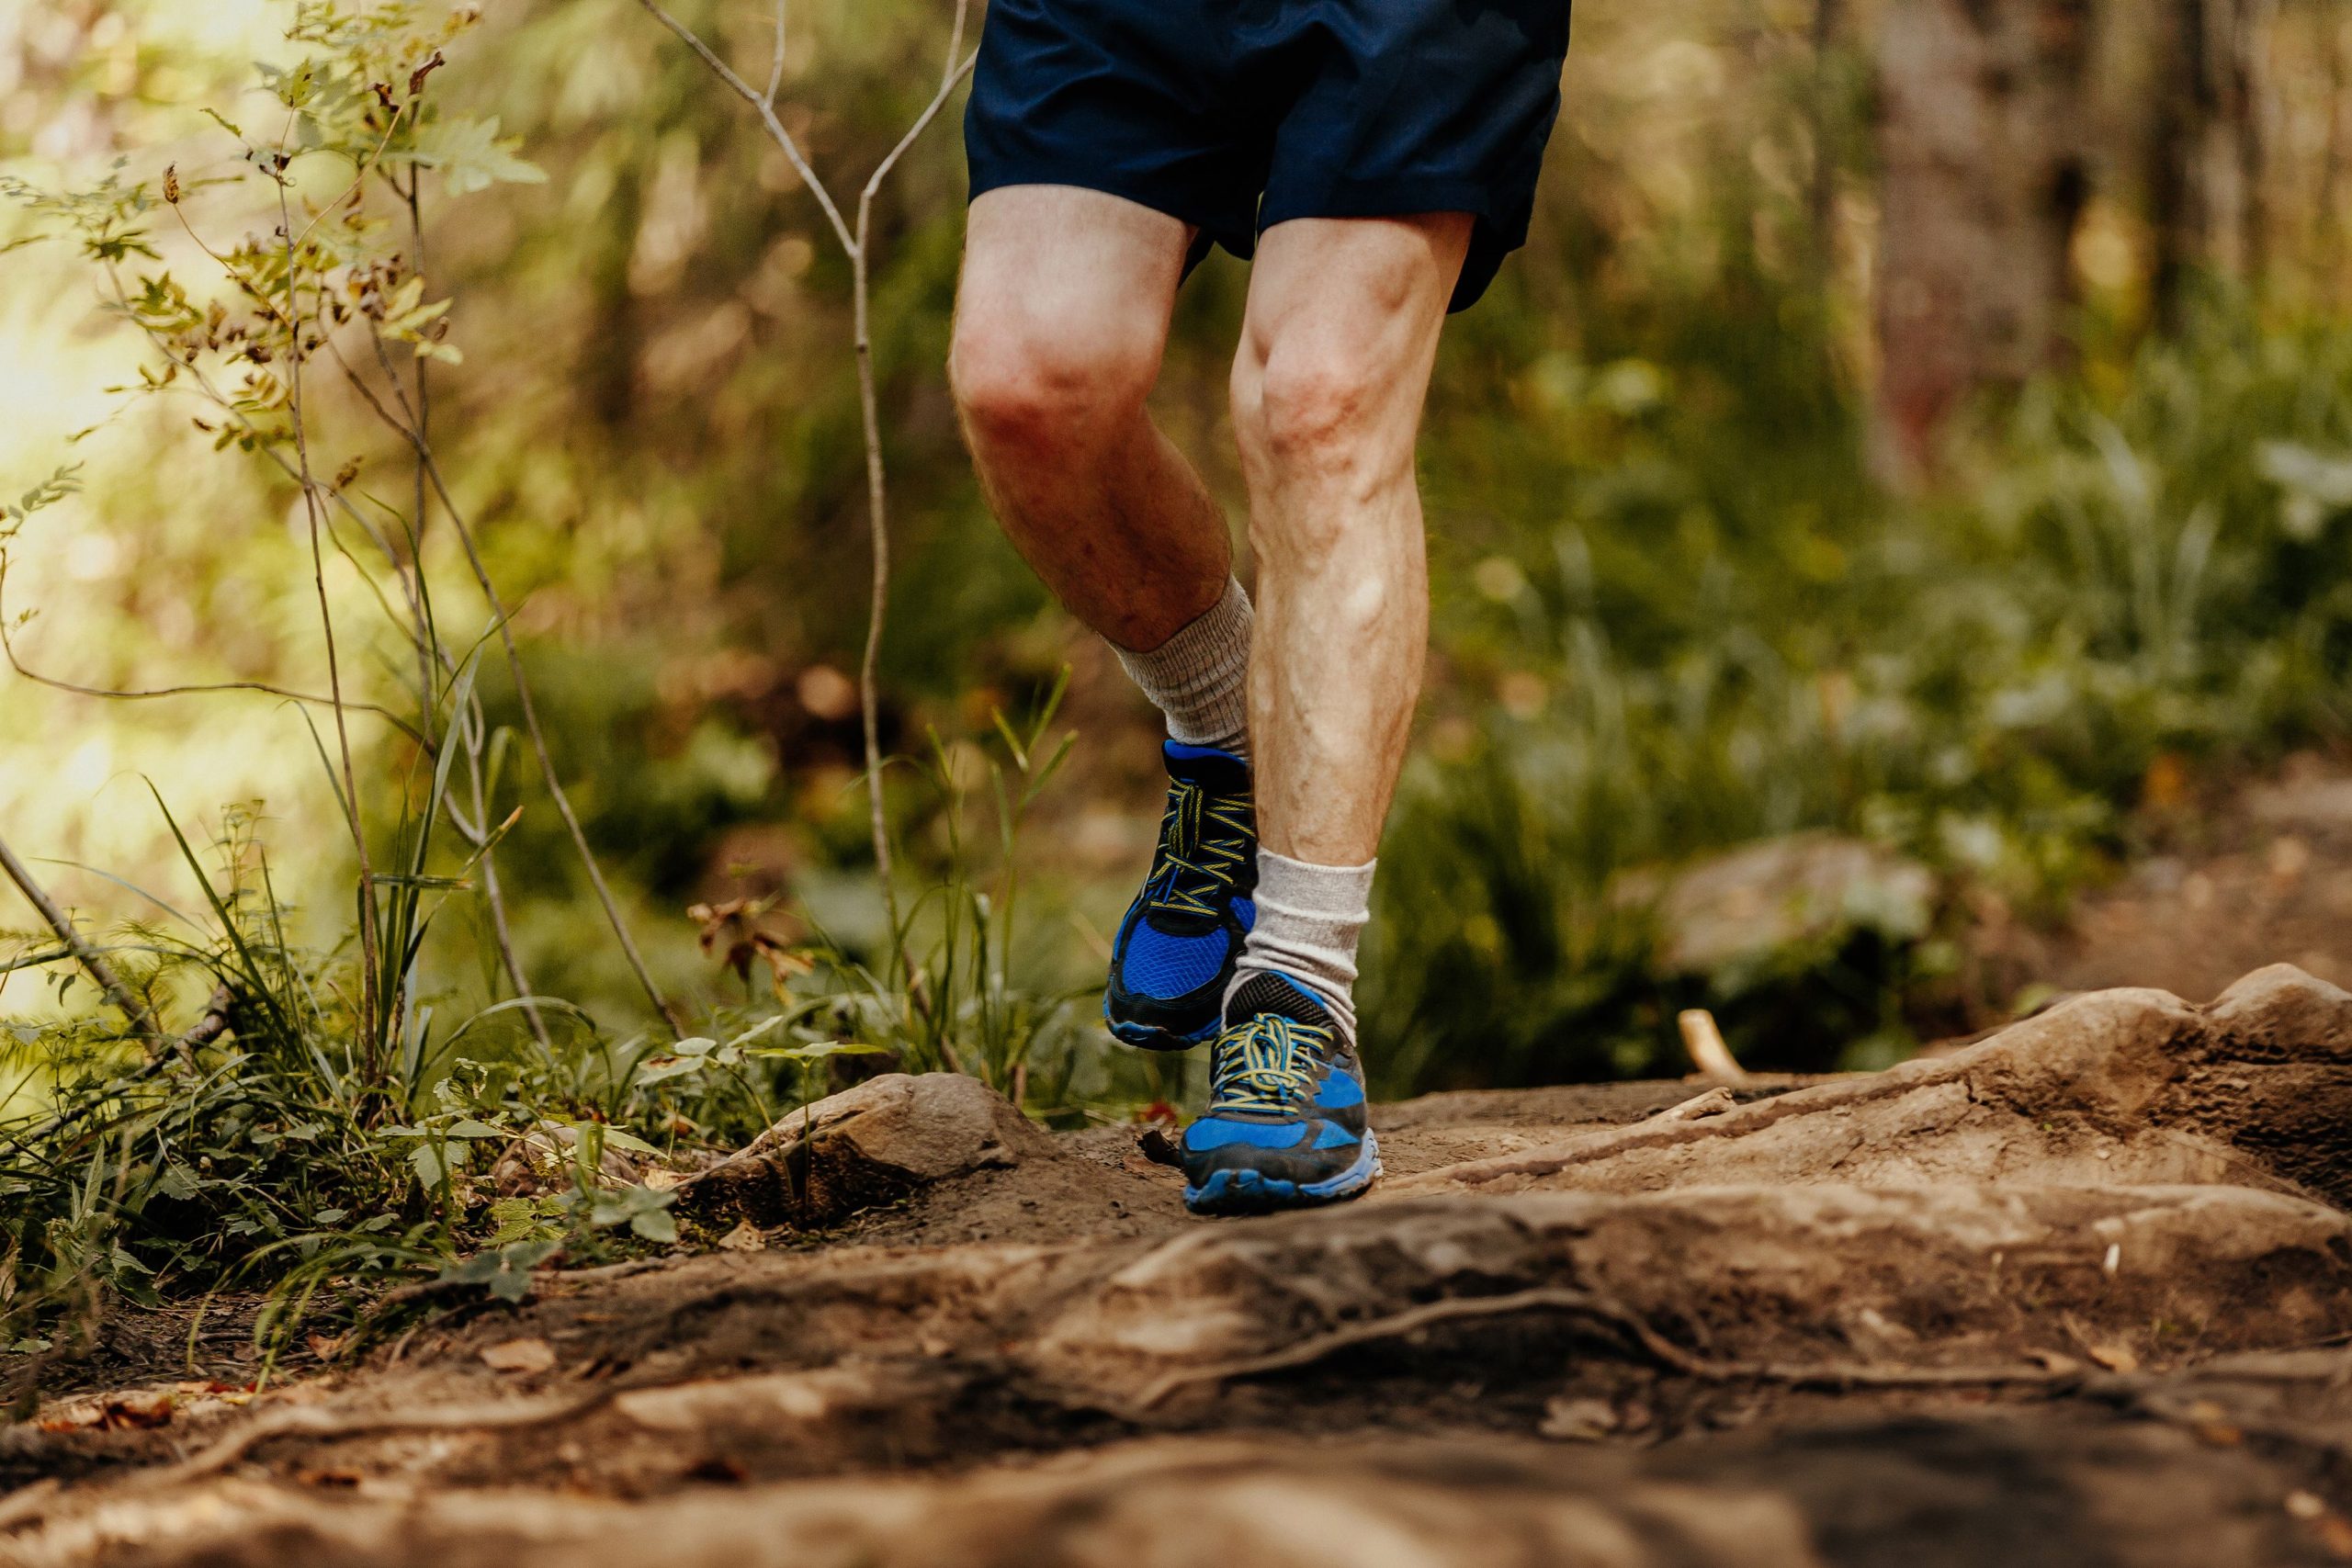 TheBoldAge’s Steve Foreman reflects on his marathon journey